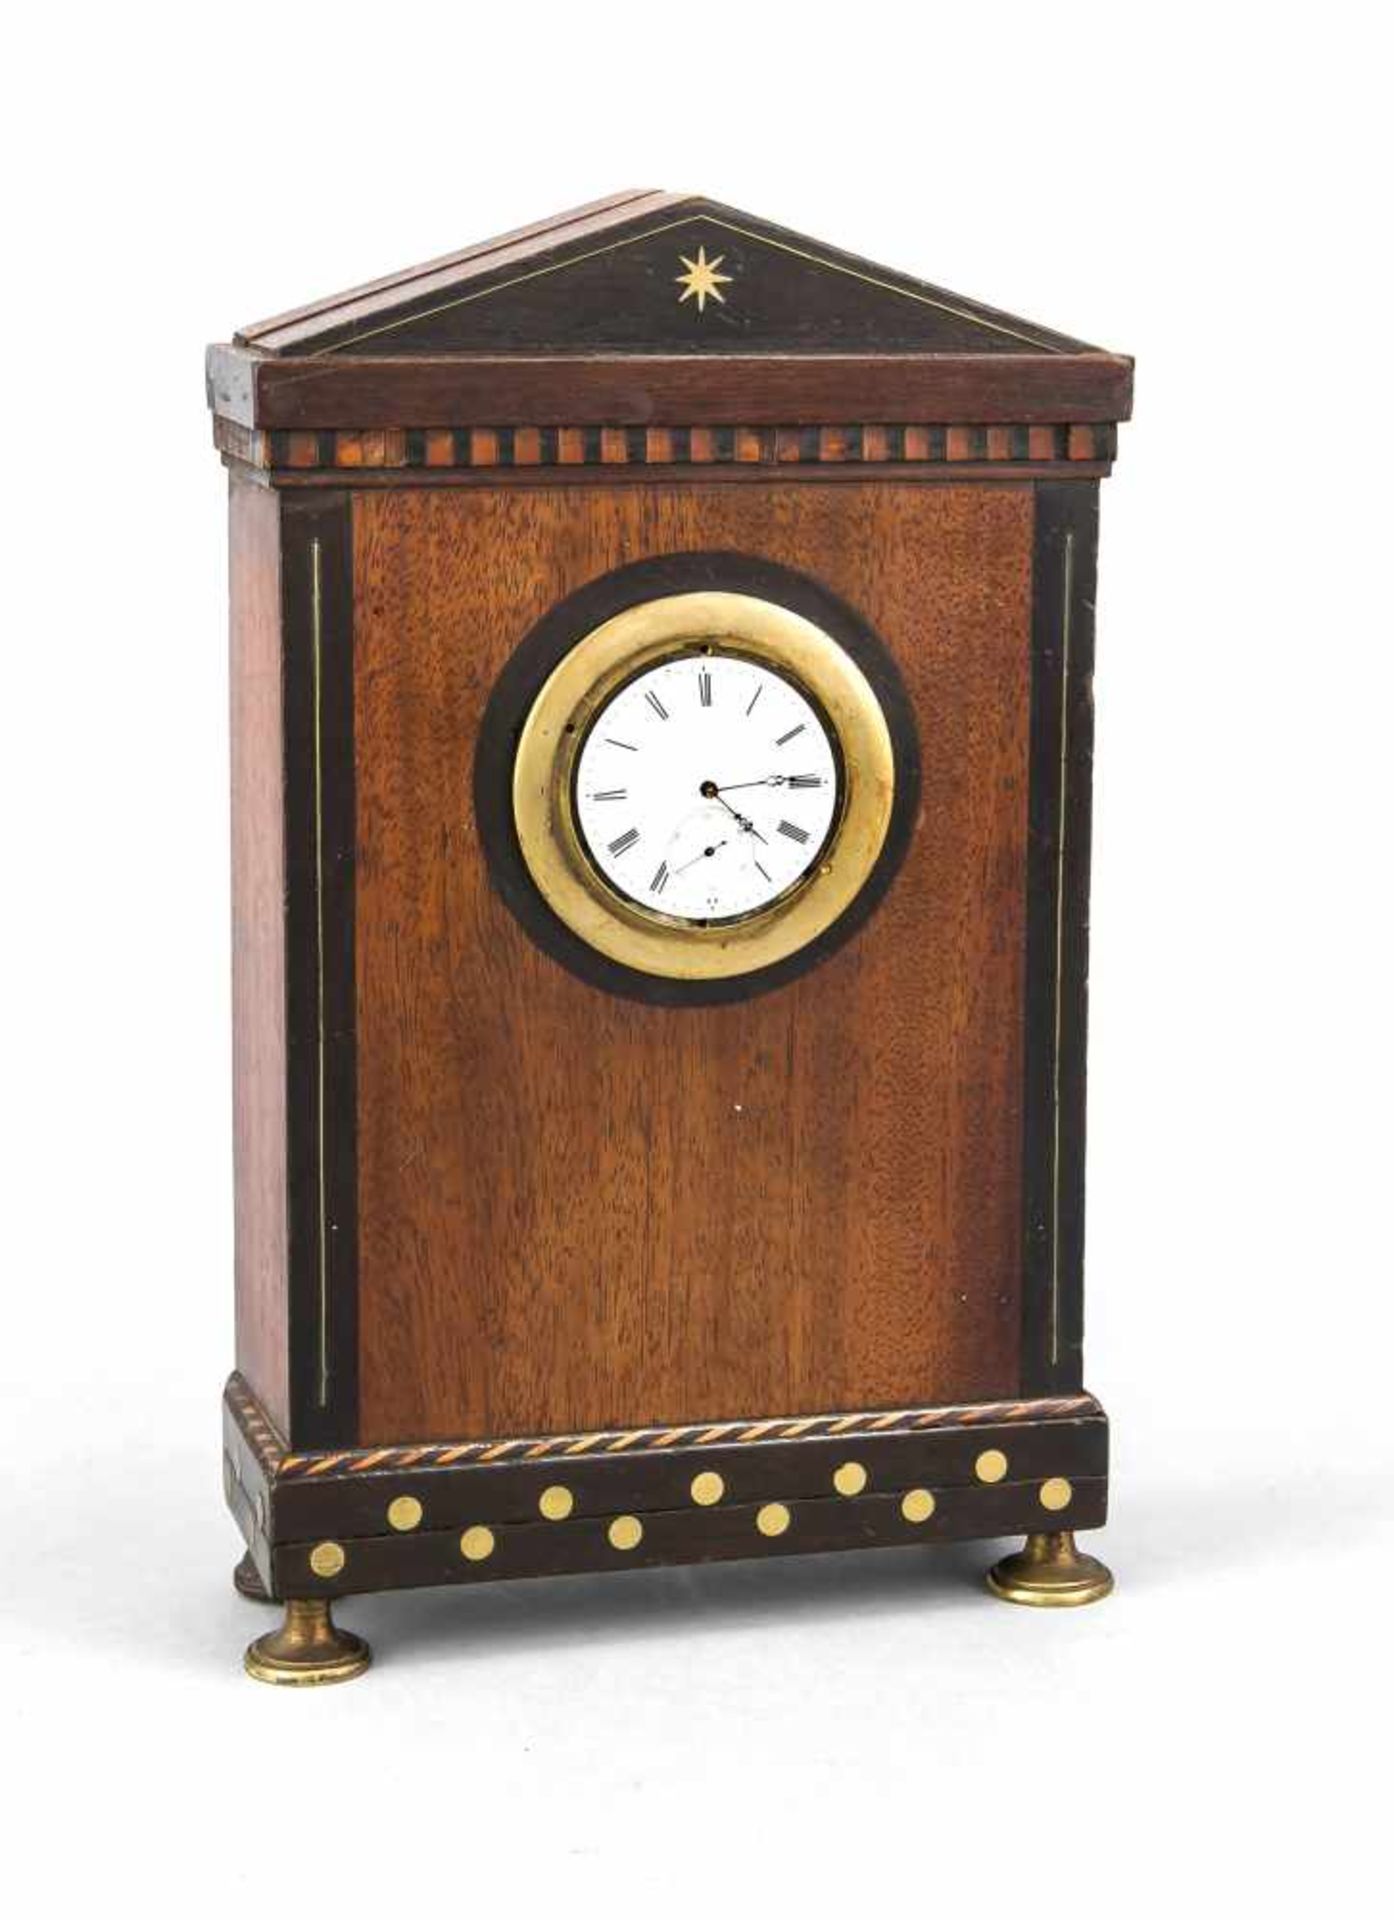 Uhrengehäuse mit Intarsien in verschiedenfarbigem Holz und Messing Einlegearbeiten, eingefügtes